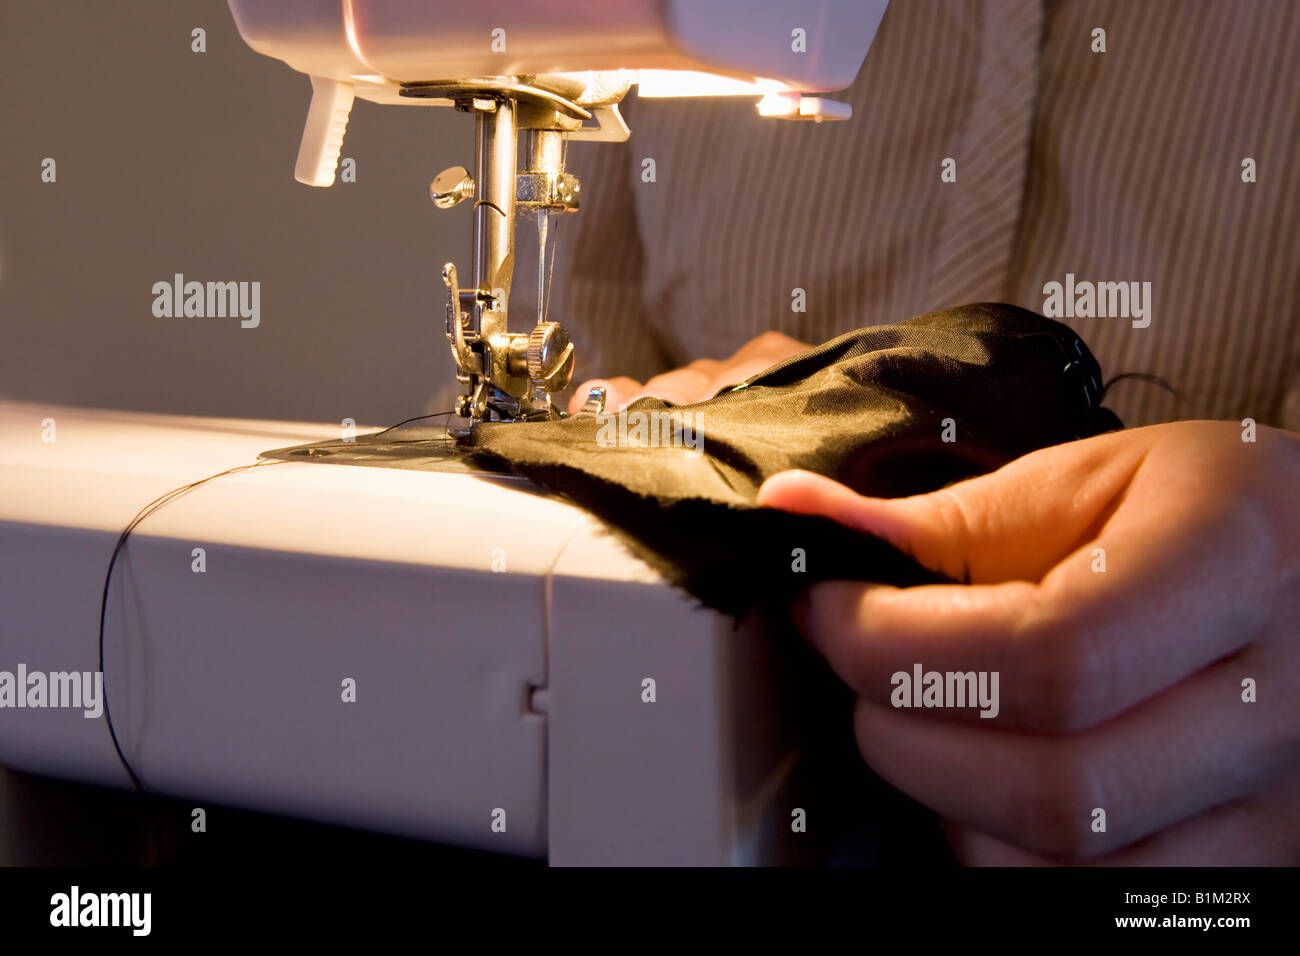 Cerca de una mujer que utiliza una máquina de coser en puntada tela negra. Foto de stock